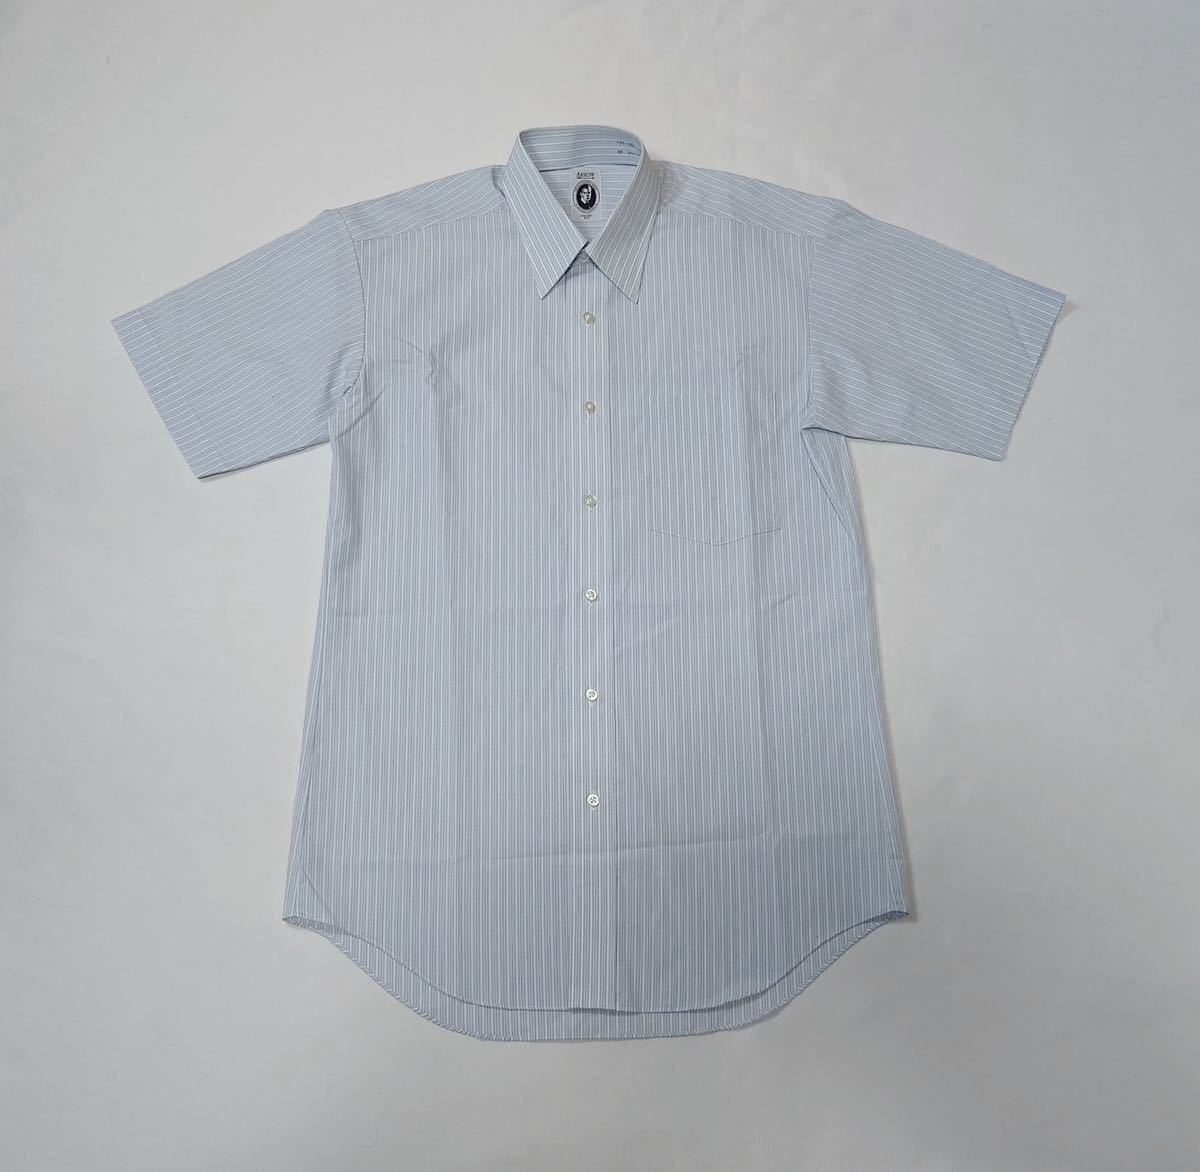 ARROW // 形態安定 半袖 ストライプ柄 シャツ・ワイシャツ (ミックス) サイズ 38-M_画像1